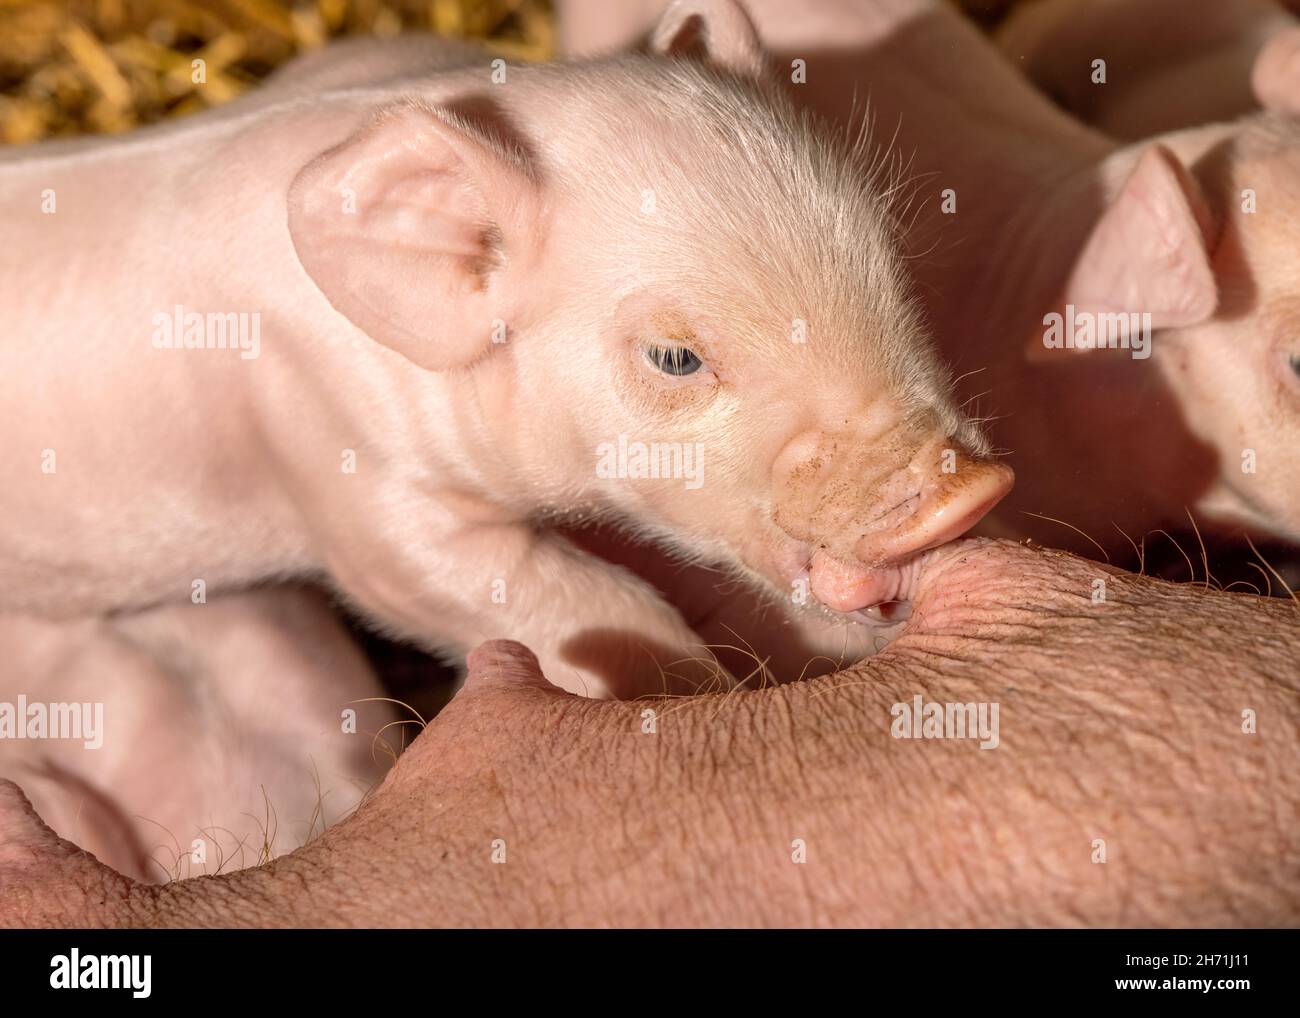 Minuscolo maialino che beve da capezzolo di maiale madre, bocca e snout succhiare, cute peloso e rosa Foto Stock